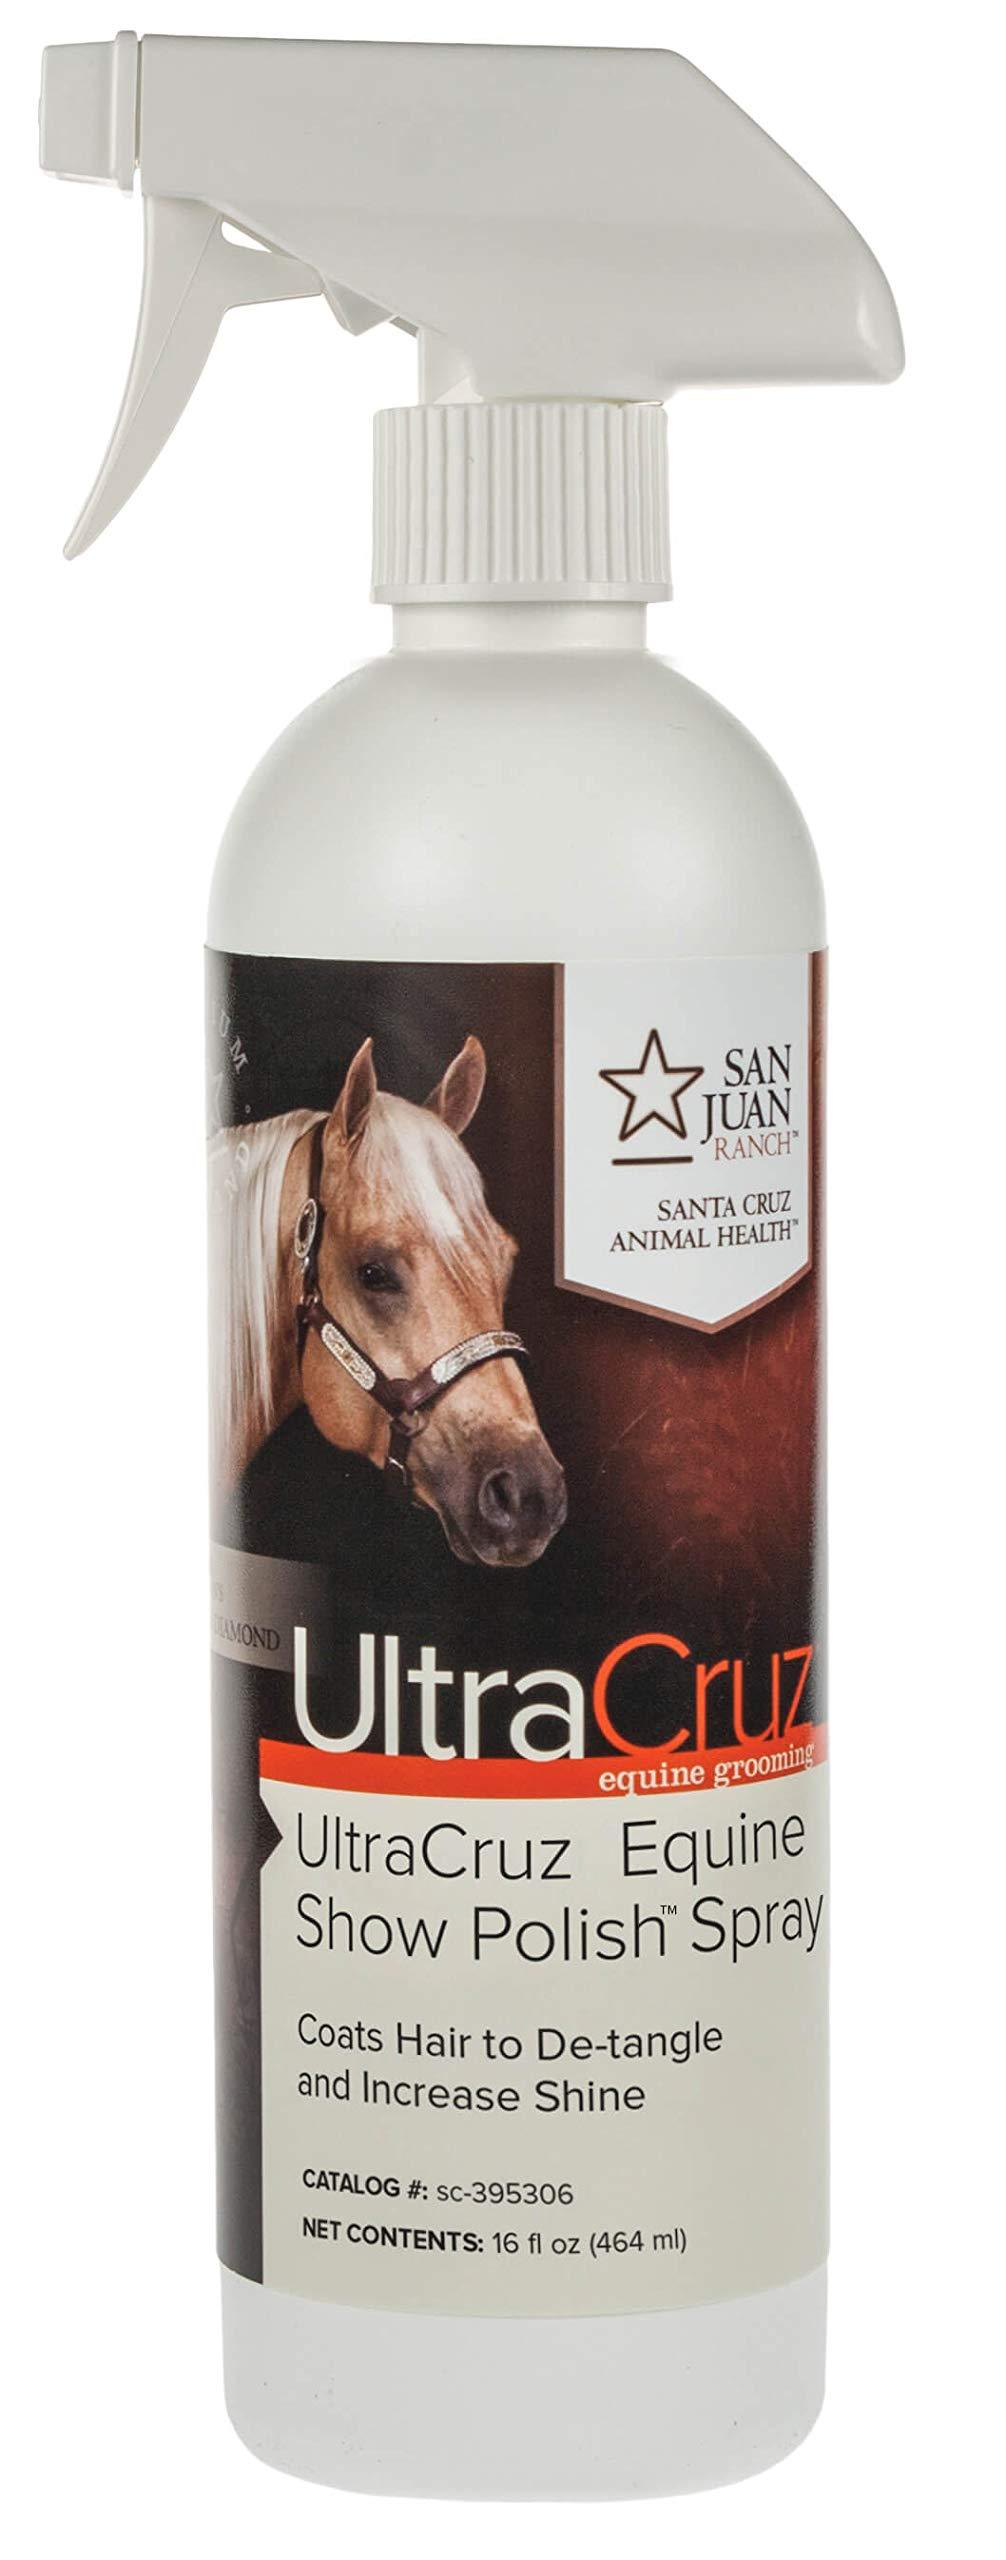 [AUSTRALIA] - UltraCruz Equine Show Polish Spray for Horses, 16 oz 